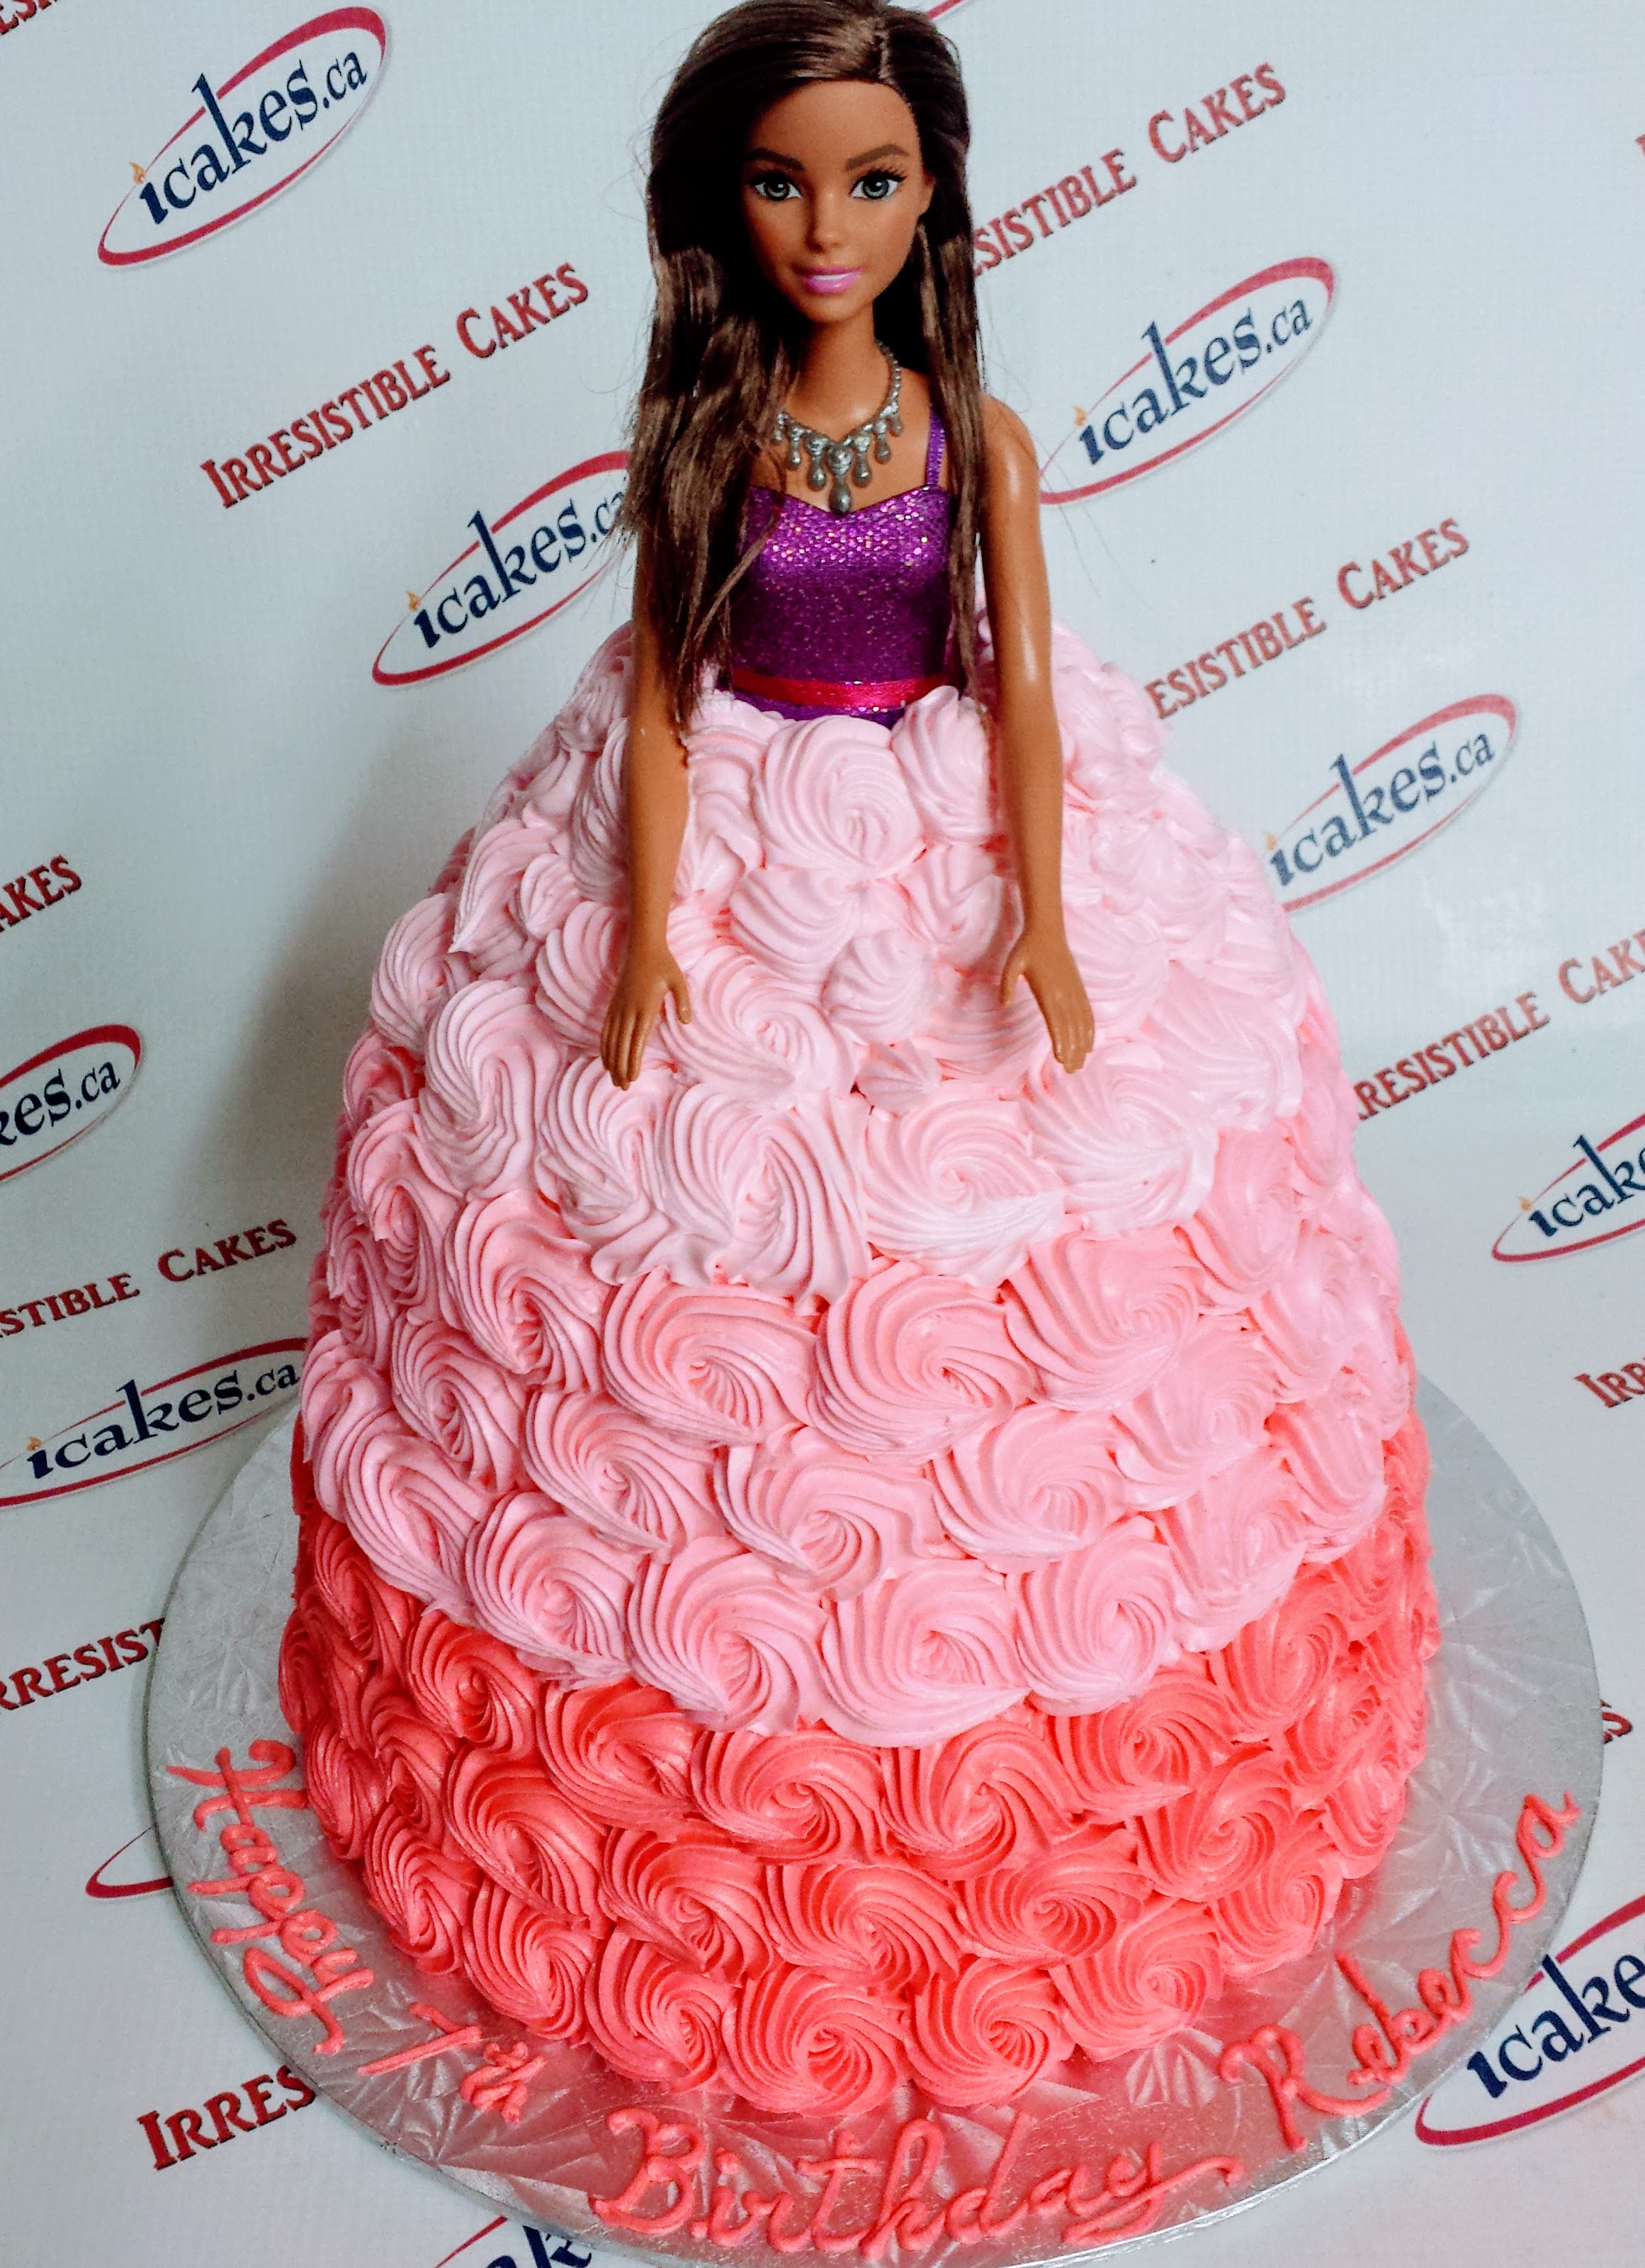 Doll Shape Barbie Buttercream Pink Rosette Cake